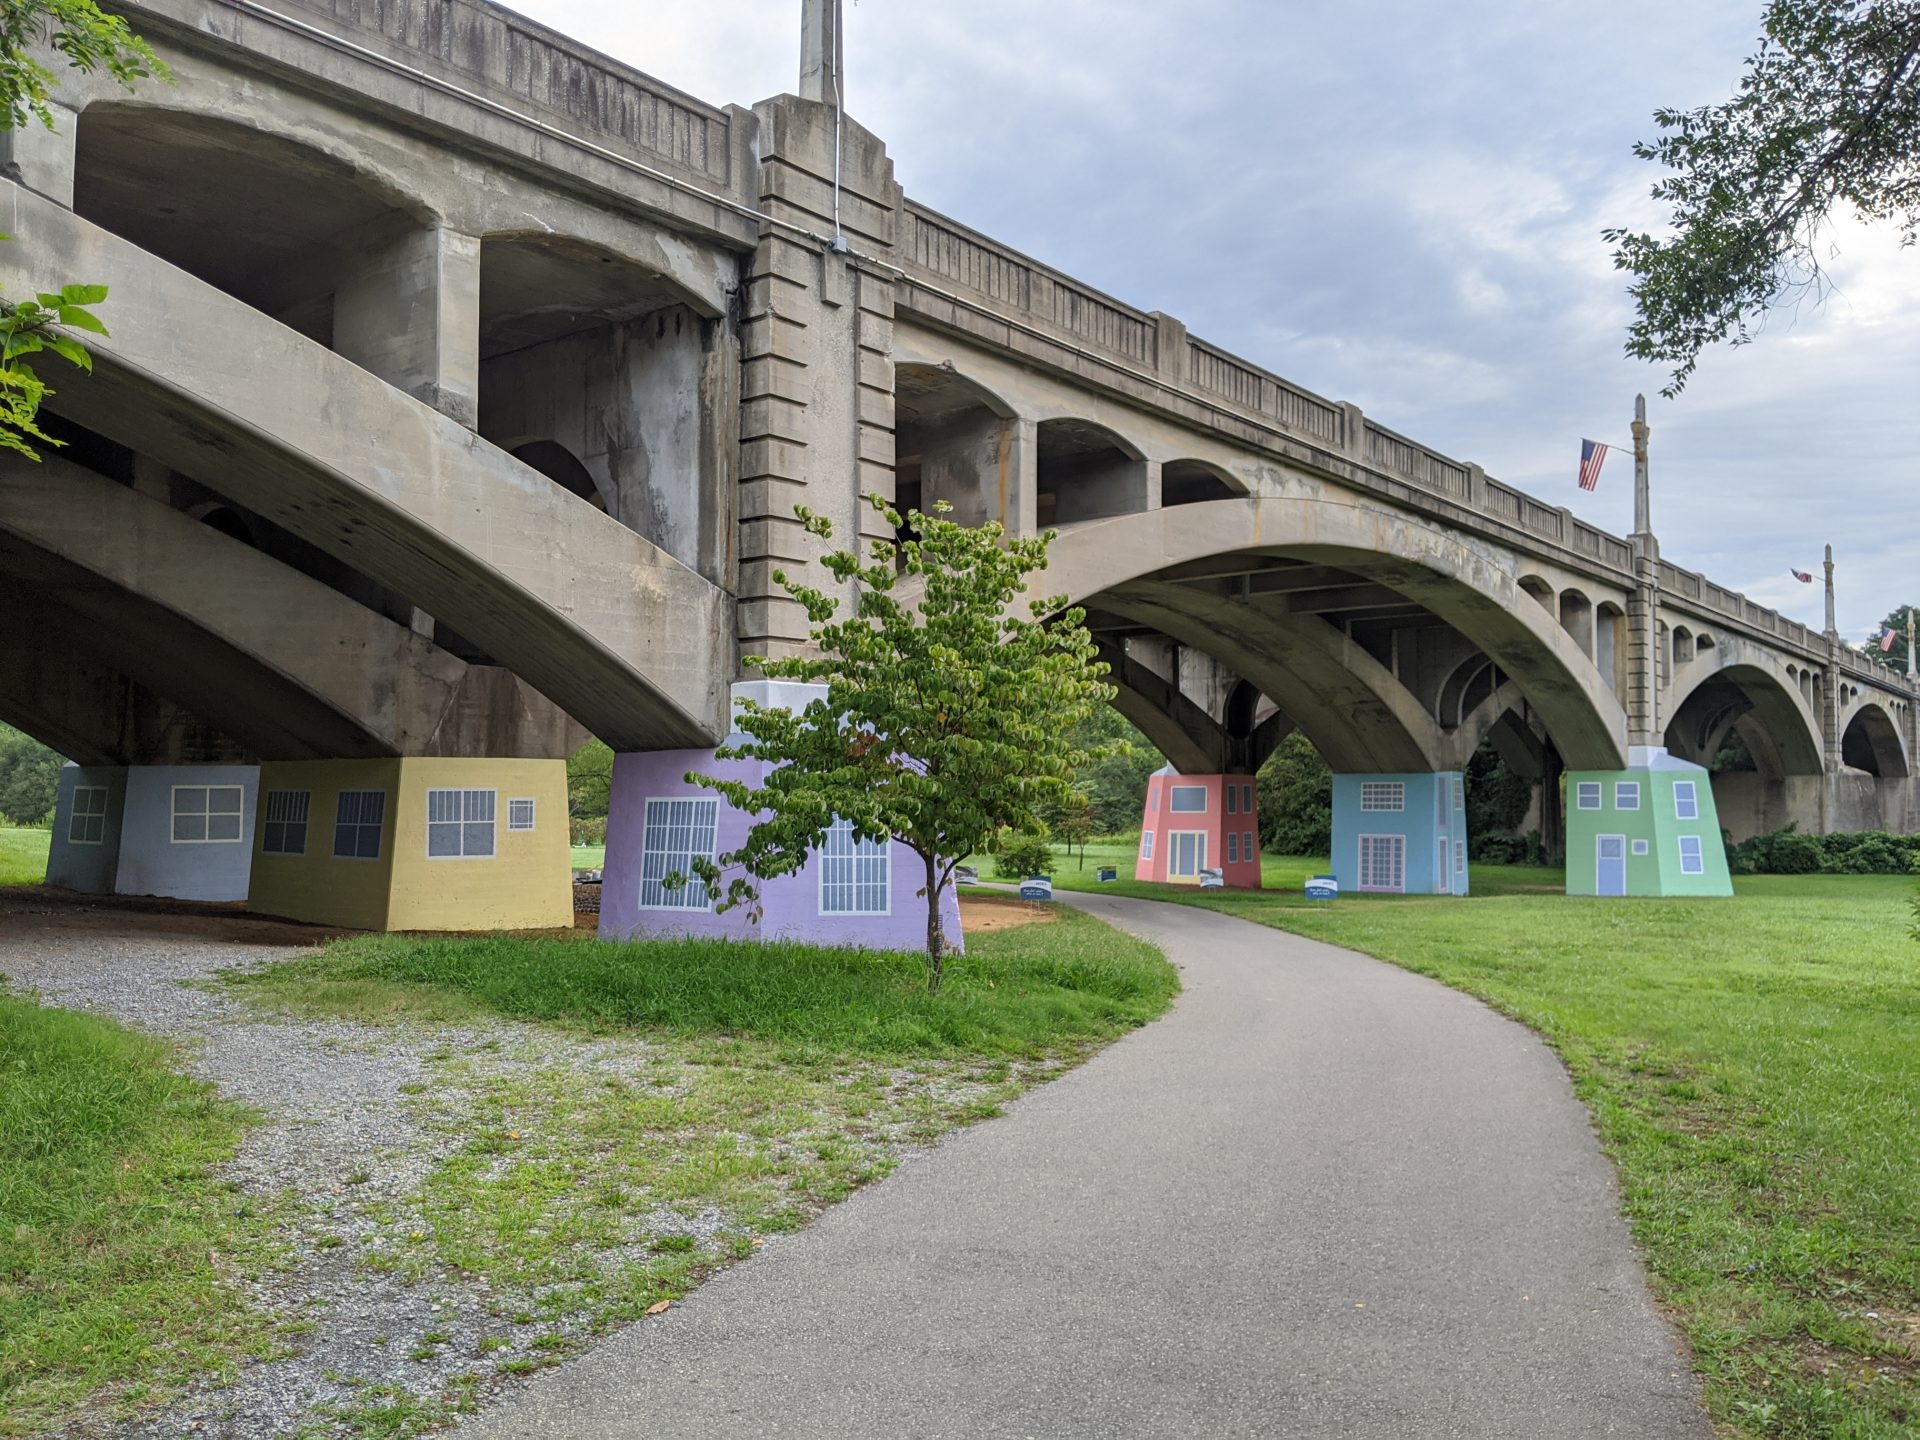 Memorial Bridge Park with public art murals on footers of bridge.